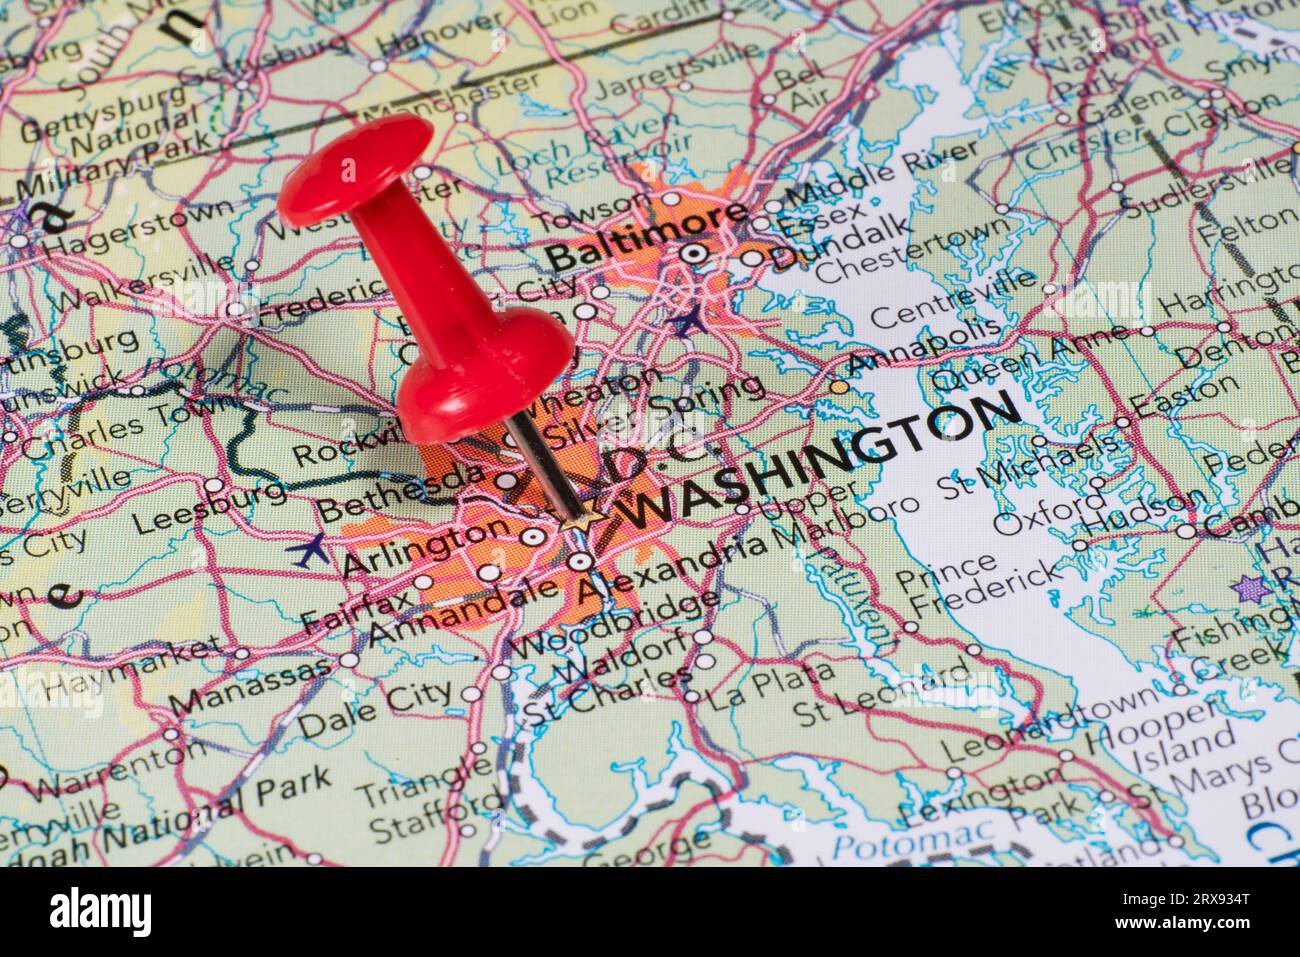 Ein roter Push-in auf einer Karte, auf der sich Washington DC befindet Stockfoto